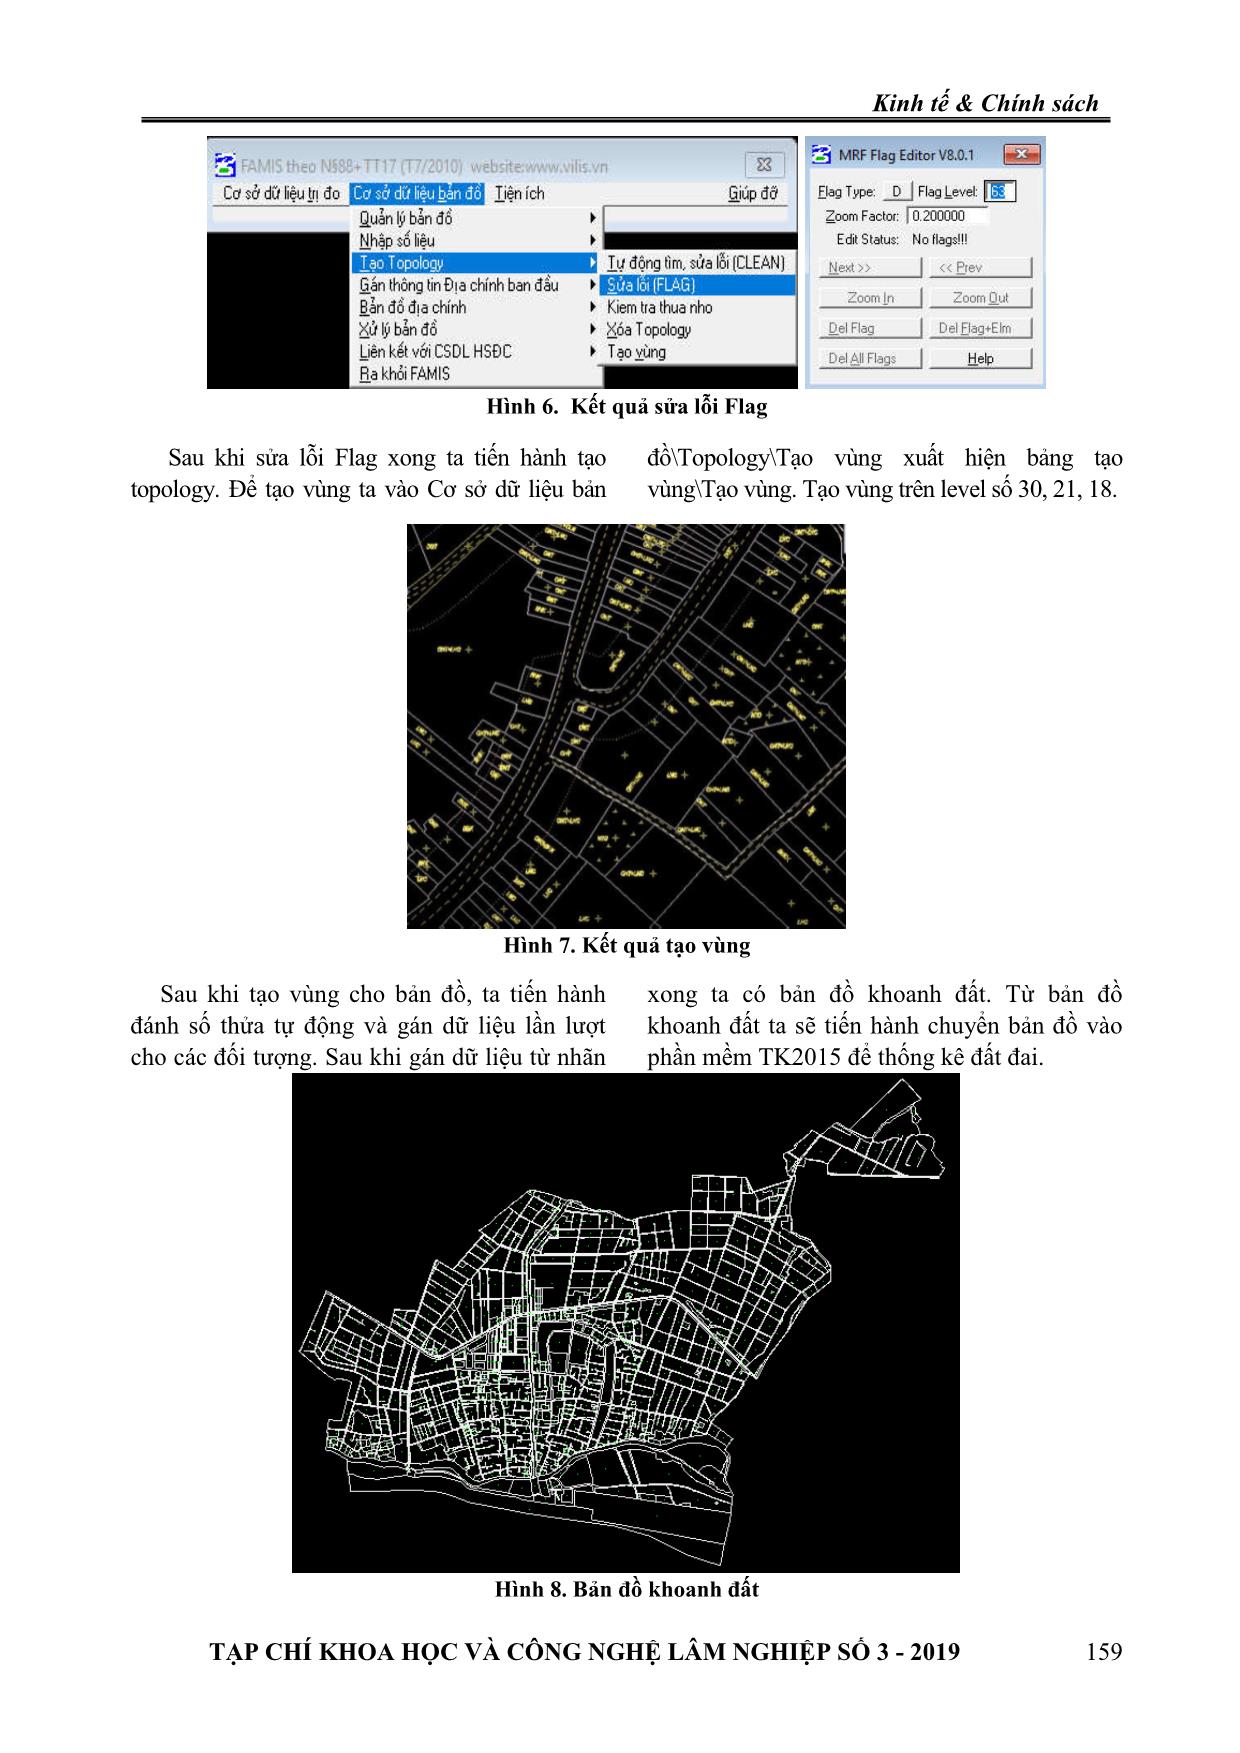 Thống kê đất đai và thành lập bản đồ hiện trạng sử dụng đất tại thị trấn Vạn Hà, huyện Thiệu Hóa, tỉnh Thanh Hóa trang 6